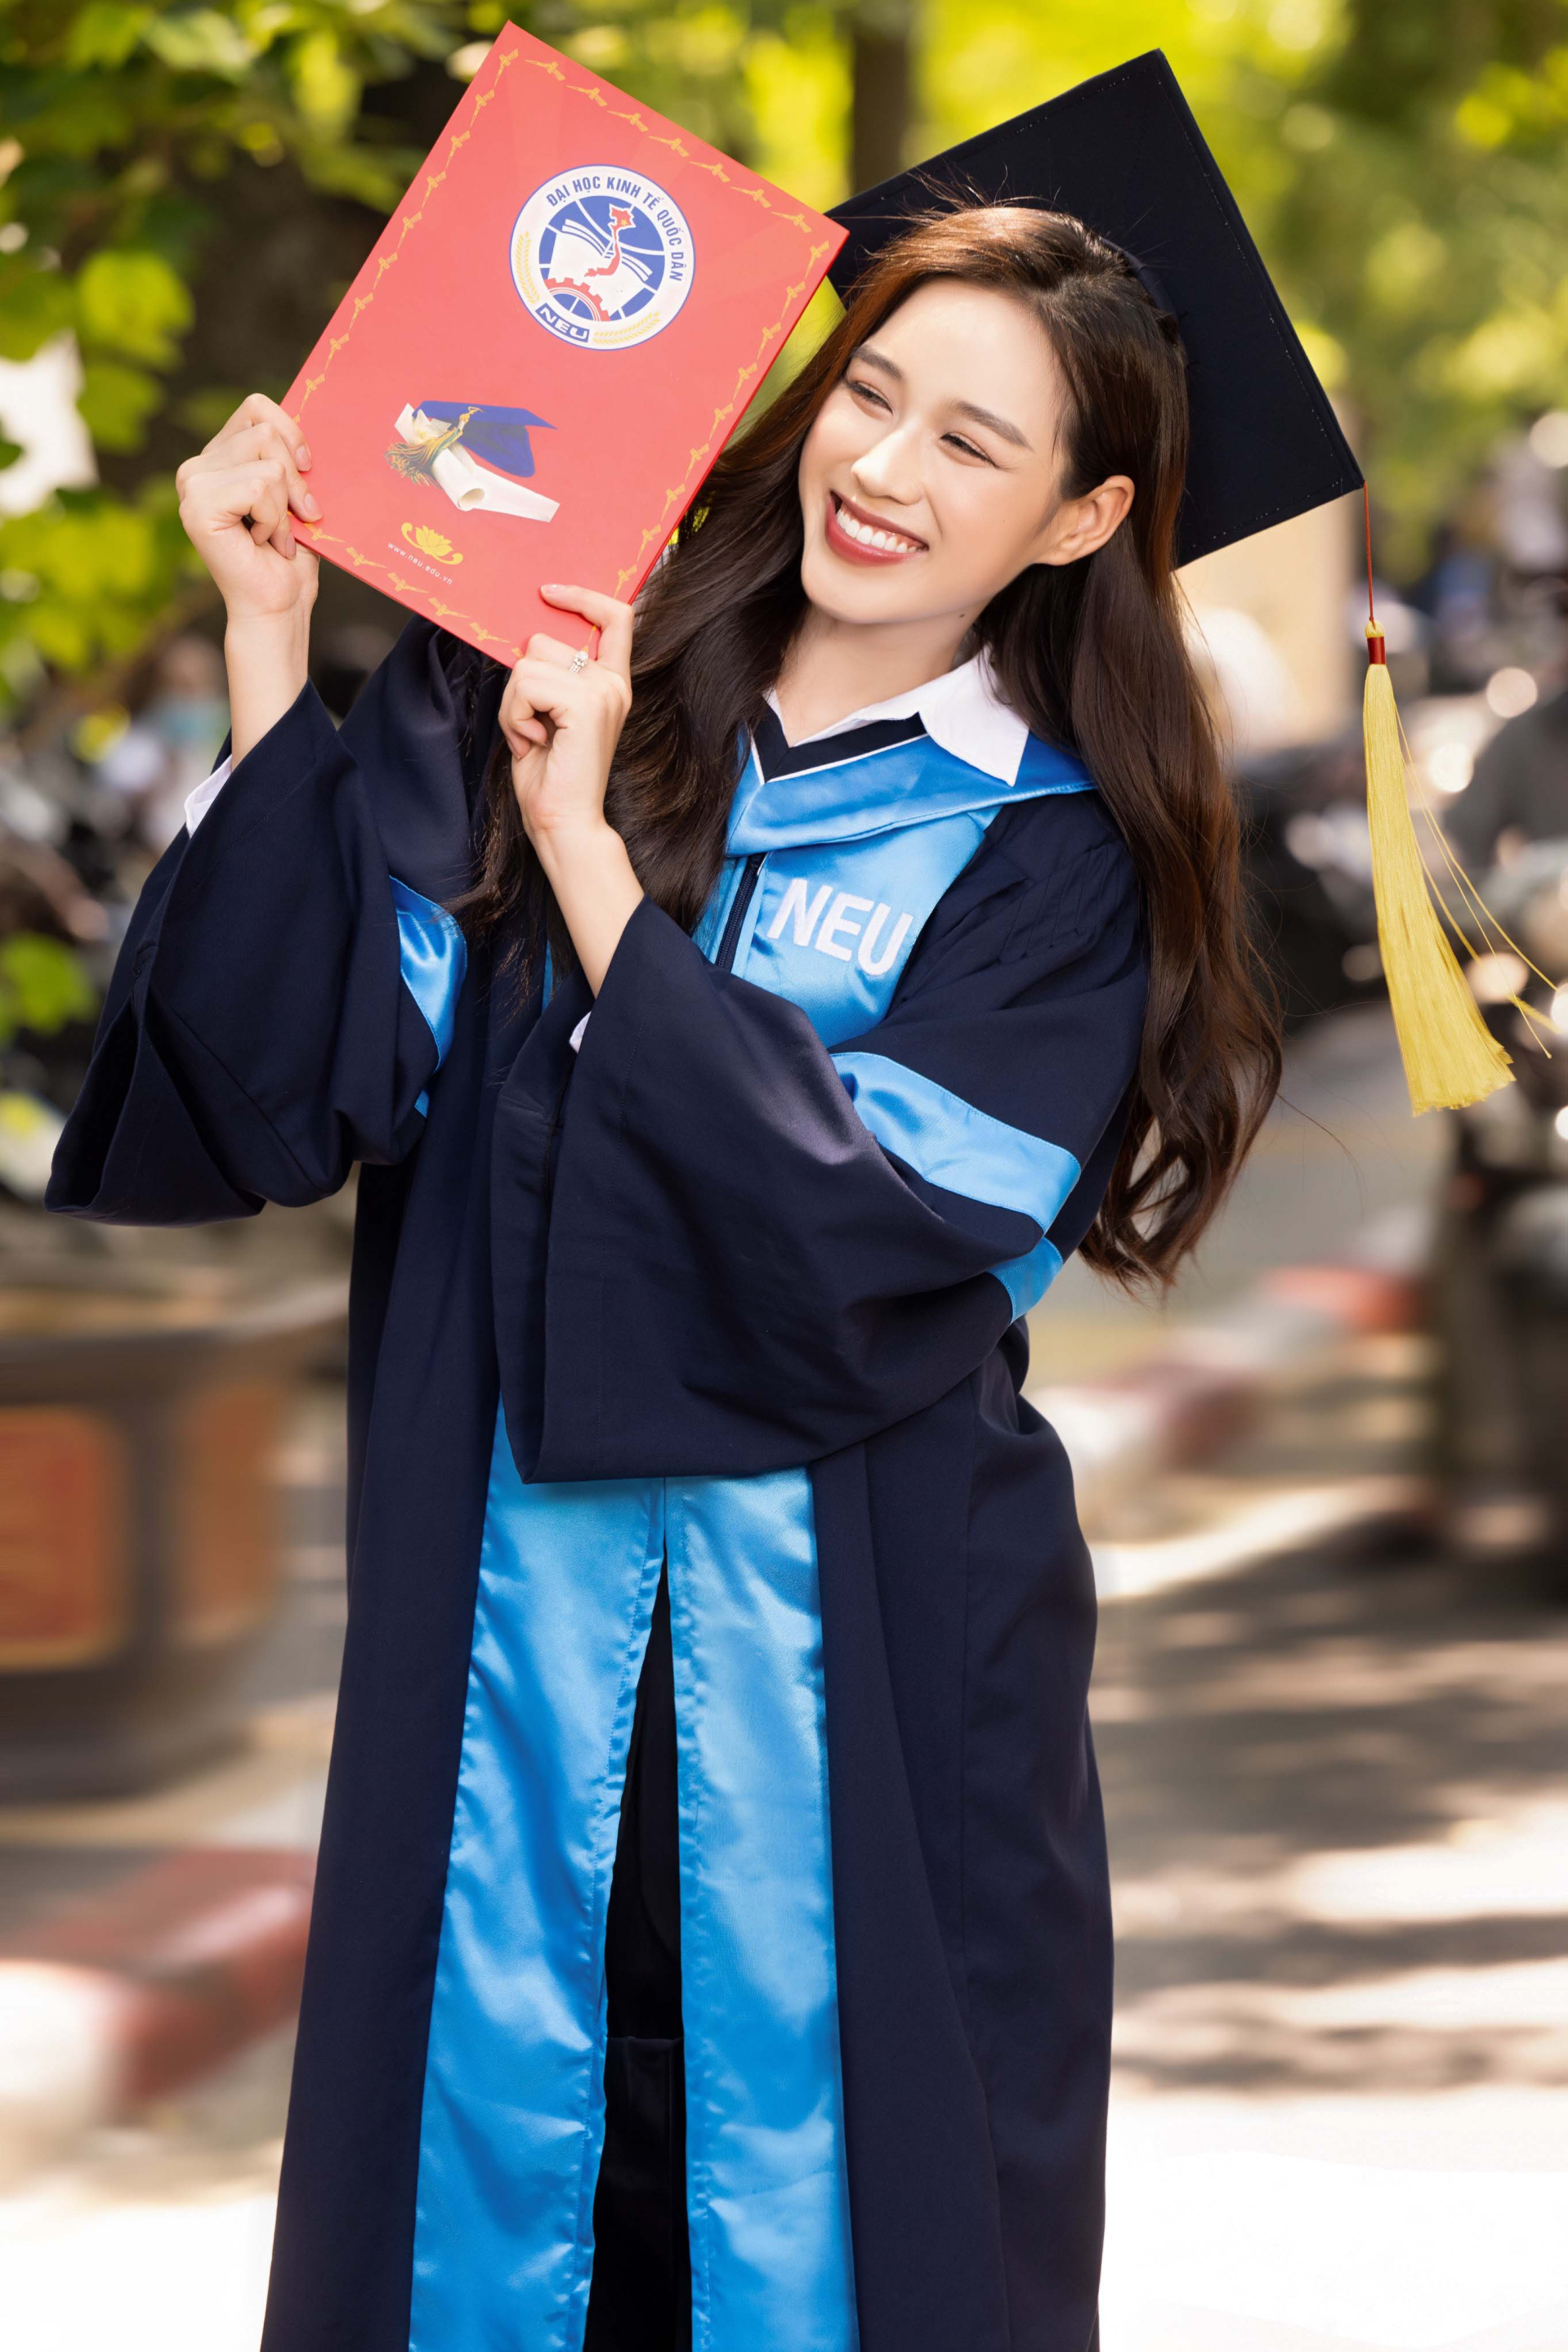 Hoa hậu Đỗ Hà cuốn hút trong ngày tốt nghiệp NEU, hào hứng chuẩn bị làm CEO ngành làm đẹp - ảnh 1